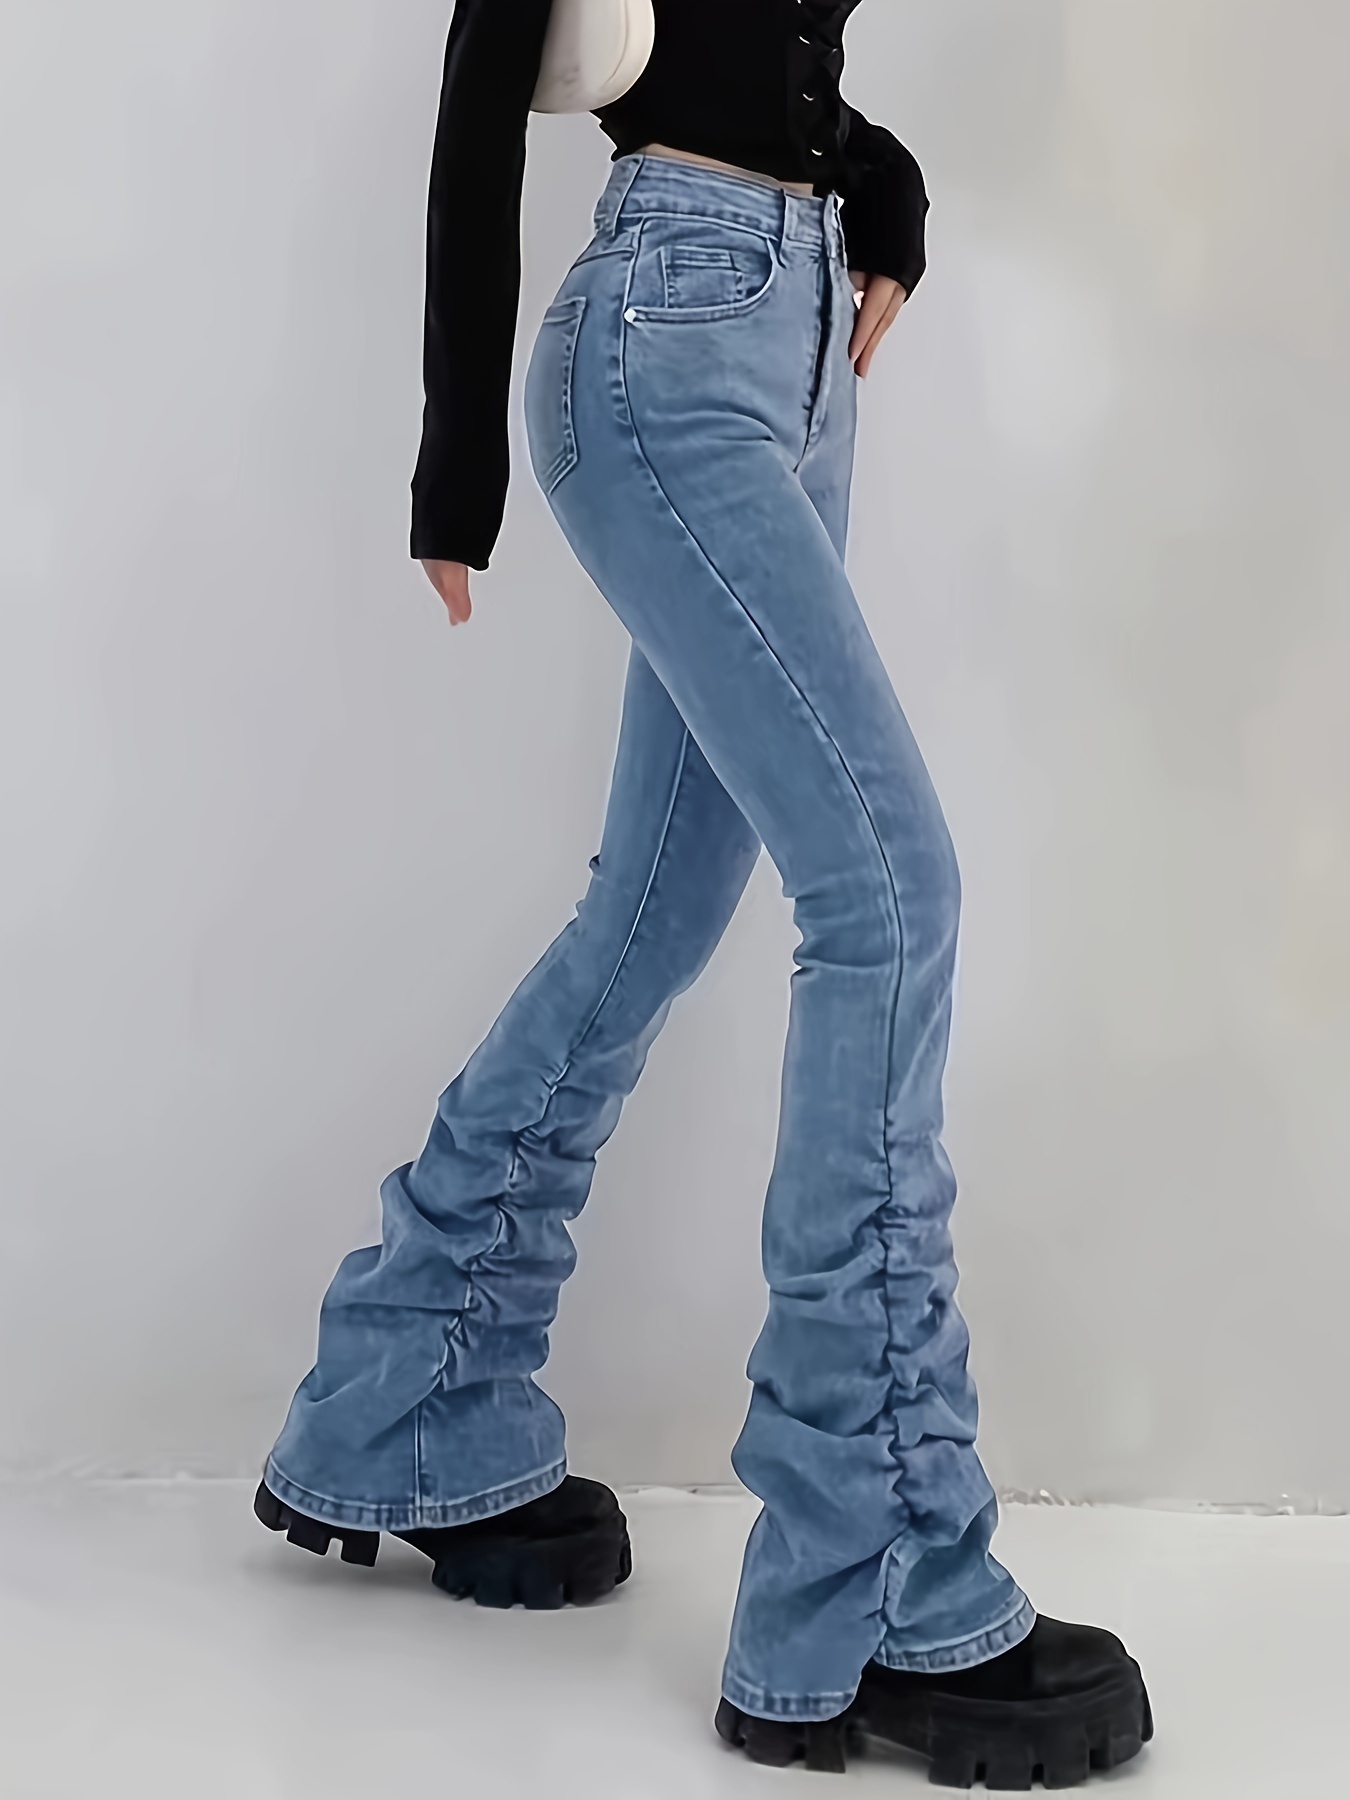 Sexy In Jeans - Temu Canada